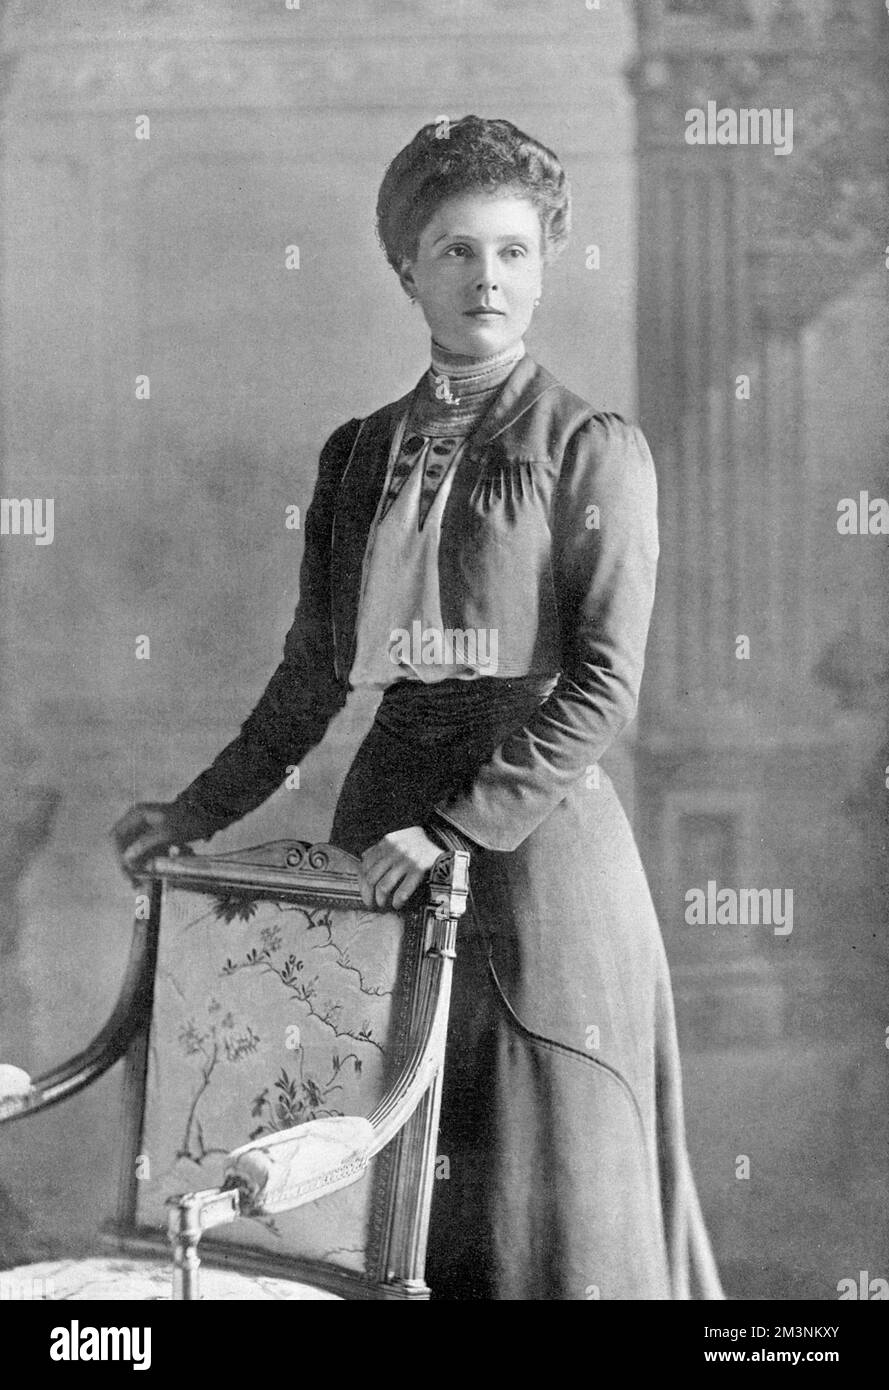 PRINCESA ALICIA DE ALBANY CONDESA de ATHLONE (1883 - 1981) nieta de la reina Victoria, esposa del príncipe Alejandro de Teck. Fotografiado en el momento de su matrimonio. Foto de stock